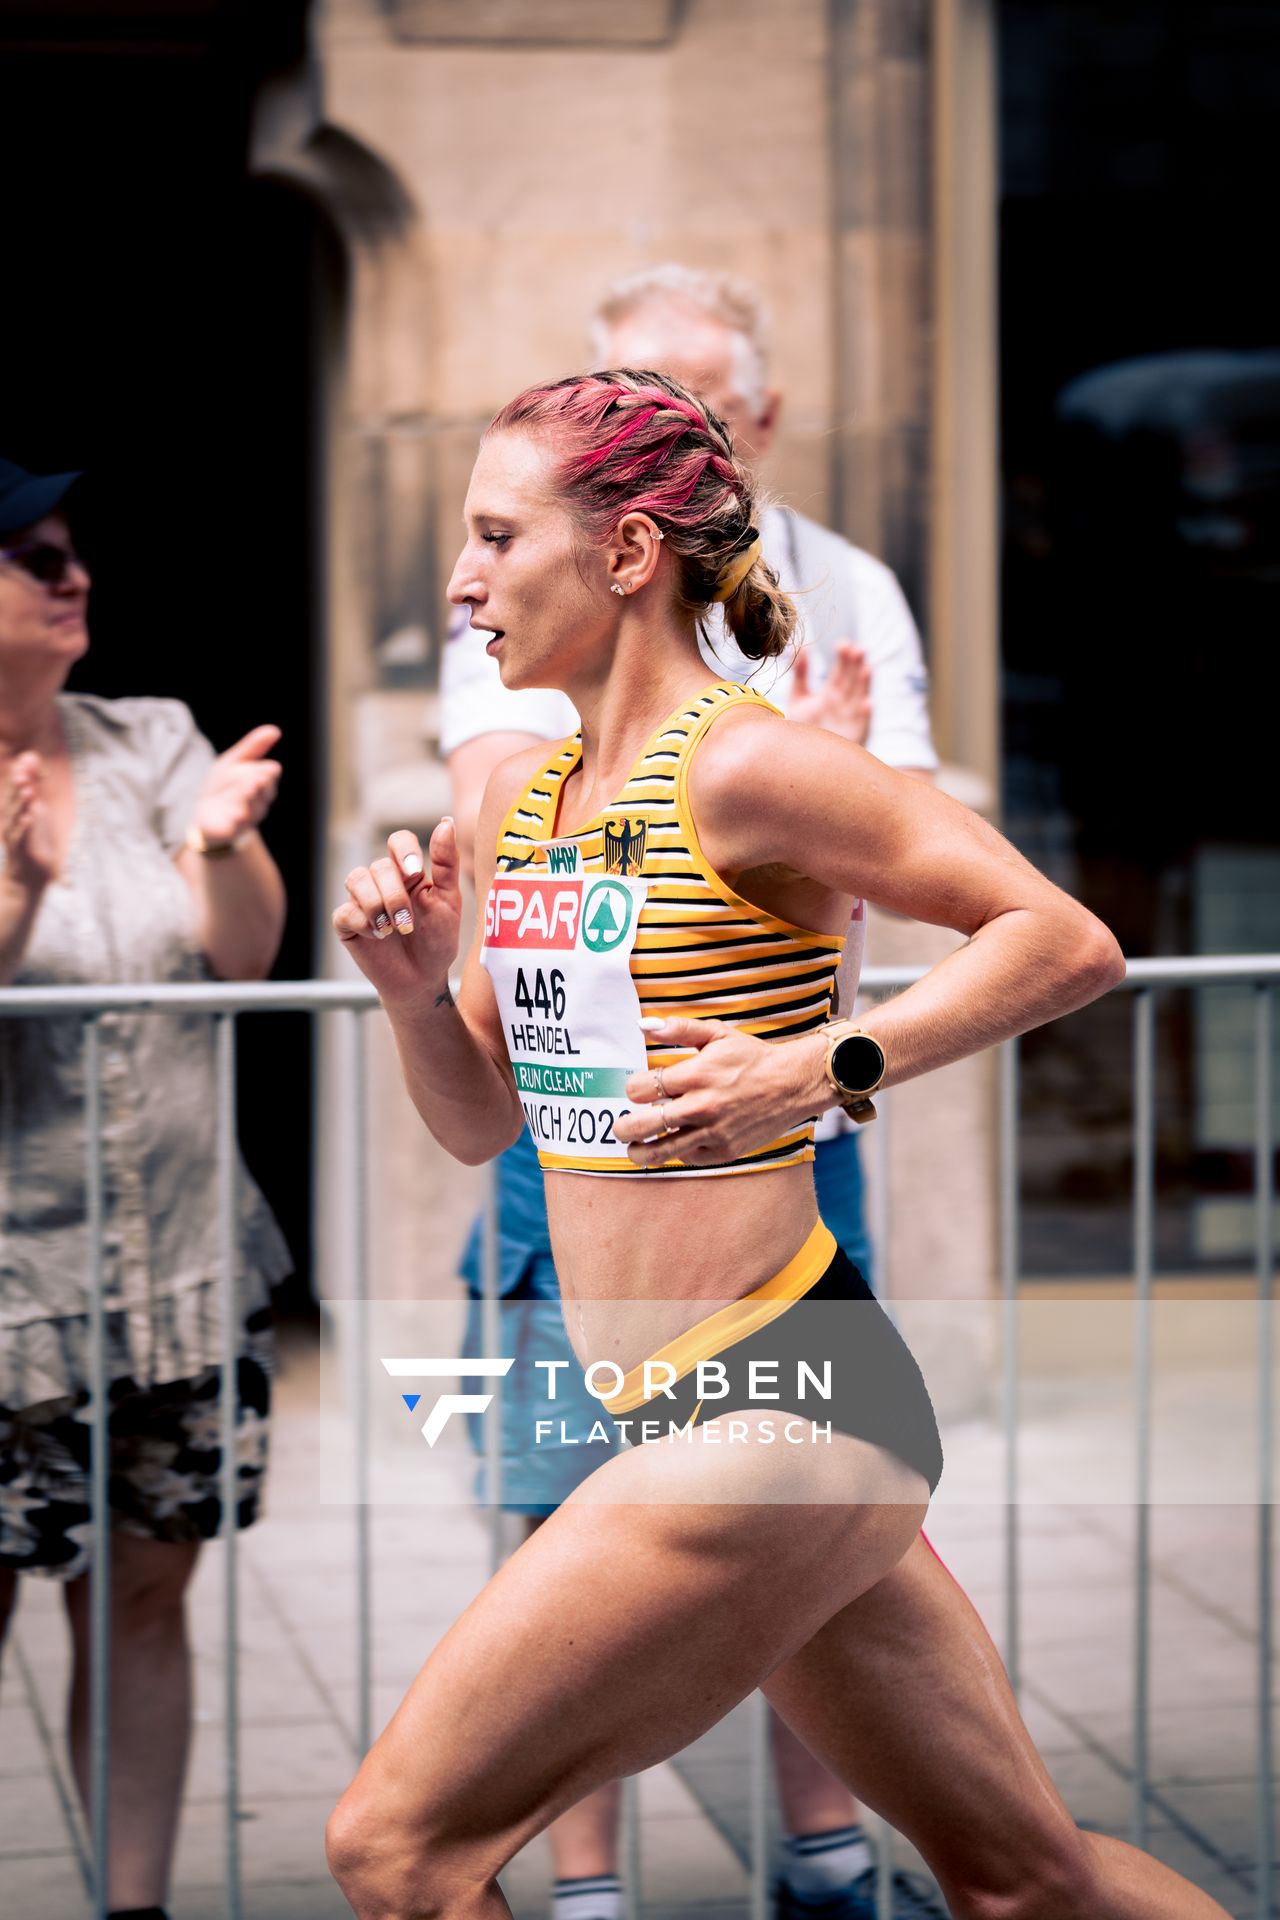 Kristina Hendel (GER); Marathon am 15.08.2022 bei den Leichtathletik-Europameisterschaften in Muenchen